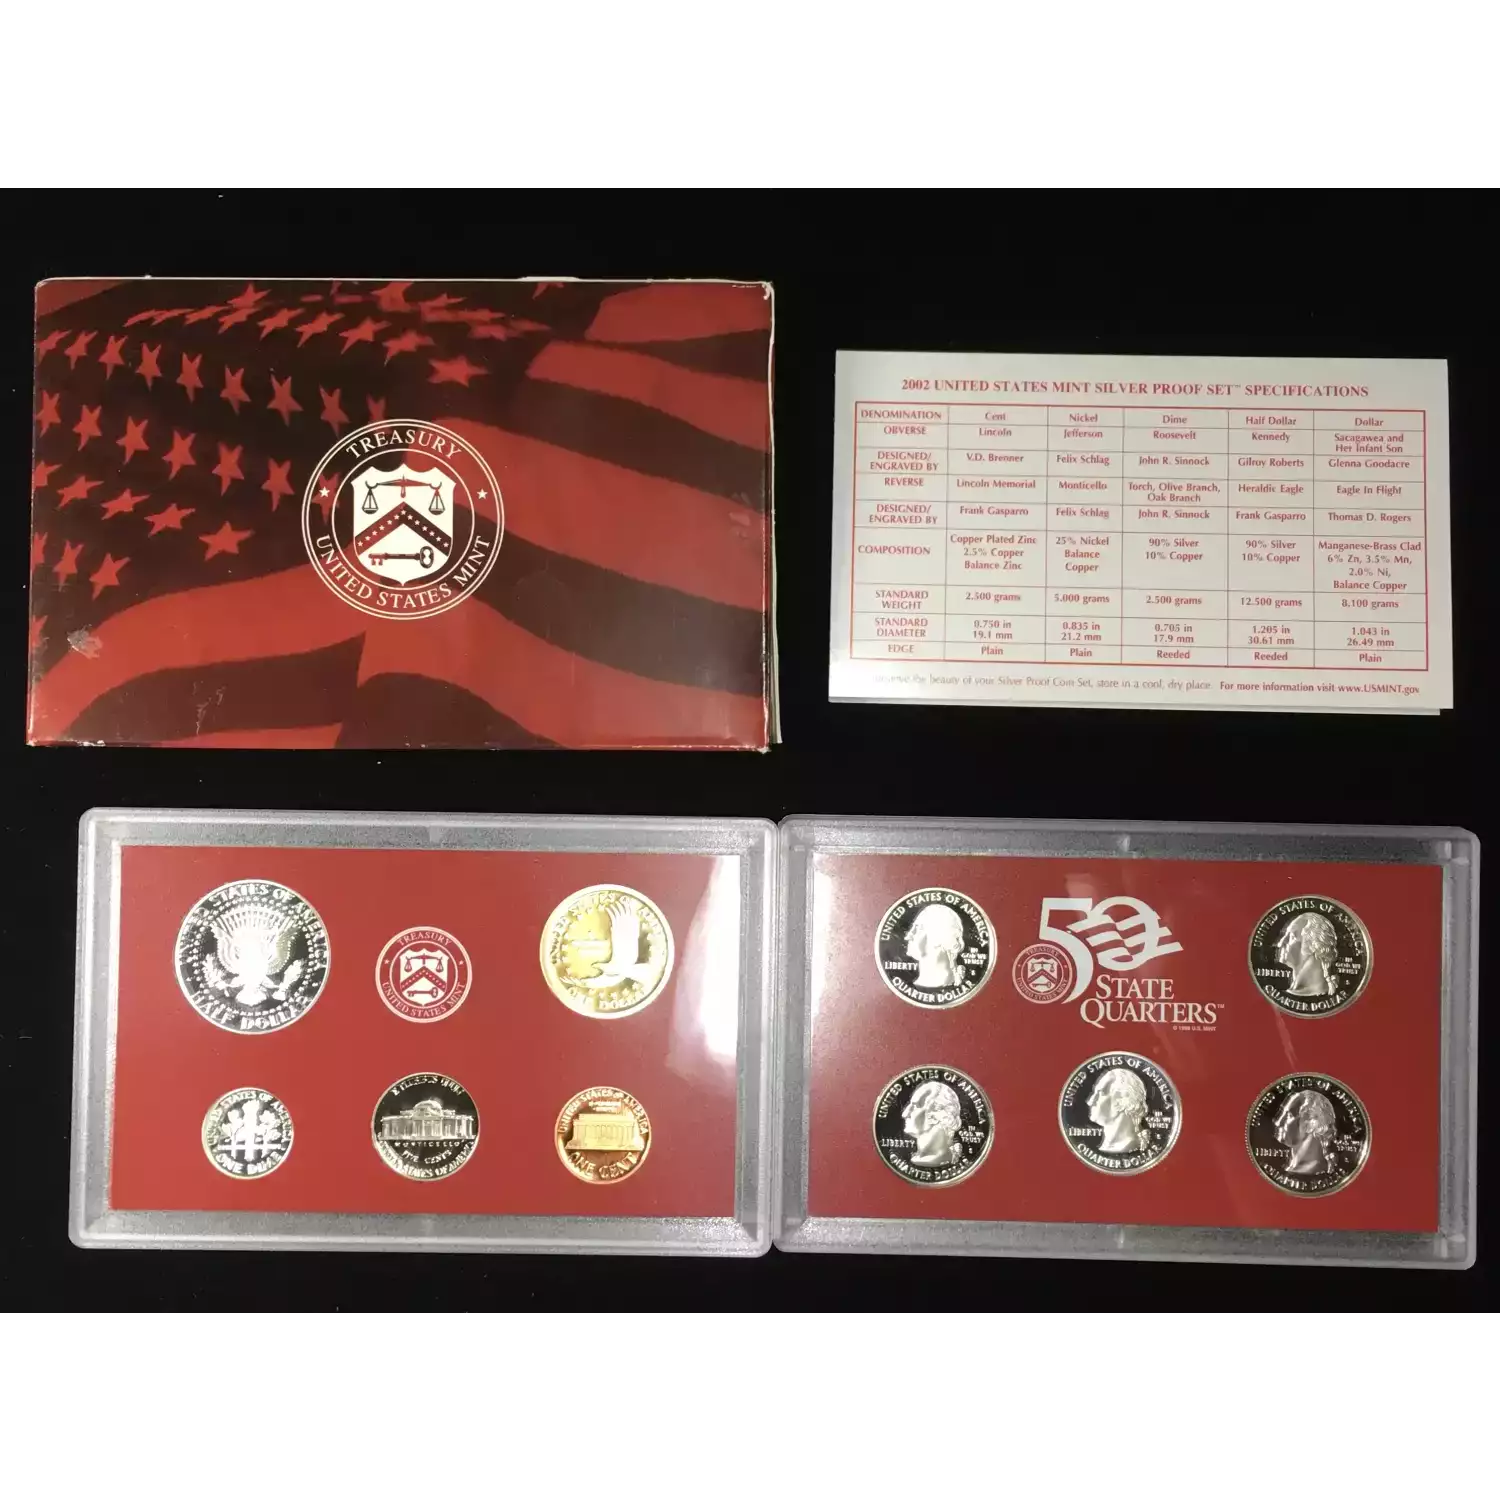 2002-S US Mint Silver Proof Set w OGP - Box & COA